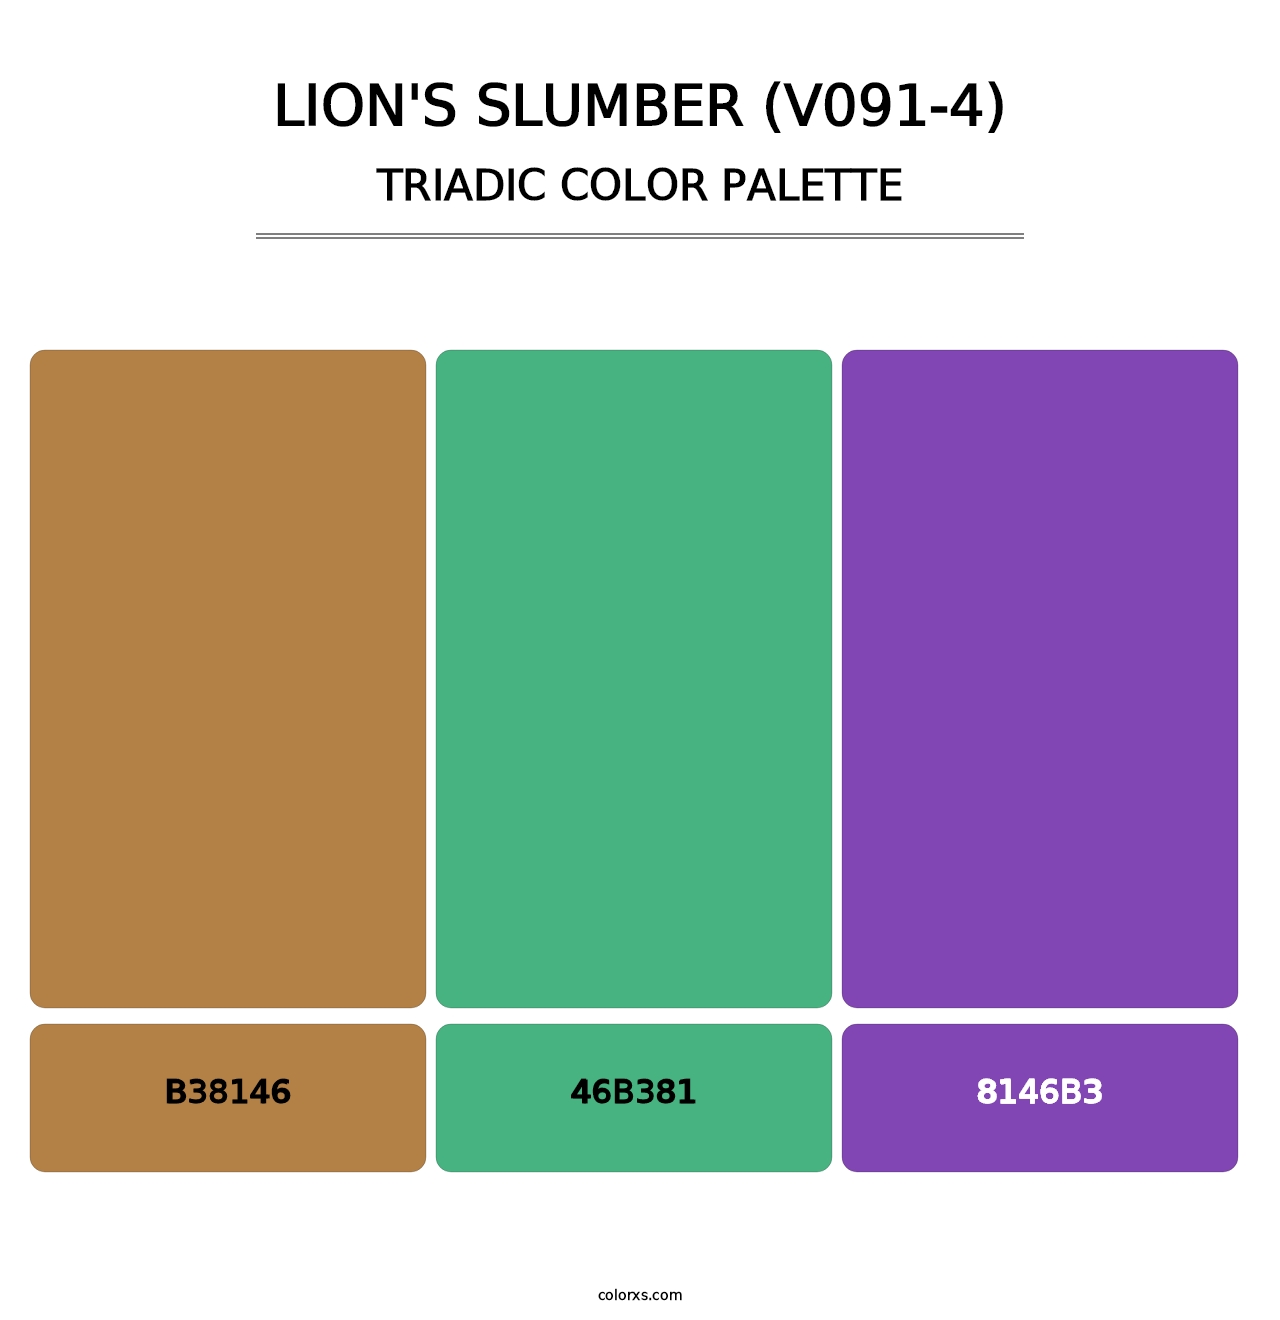 Lion's Slumber (V091-4) - Triadic Color Palette